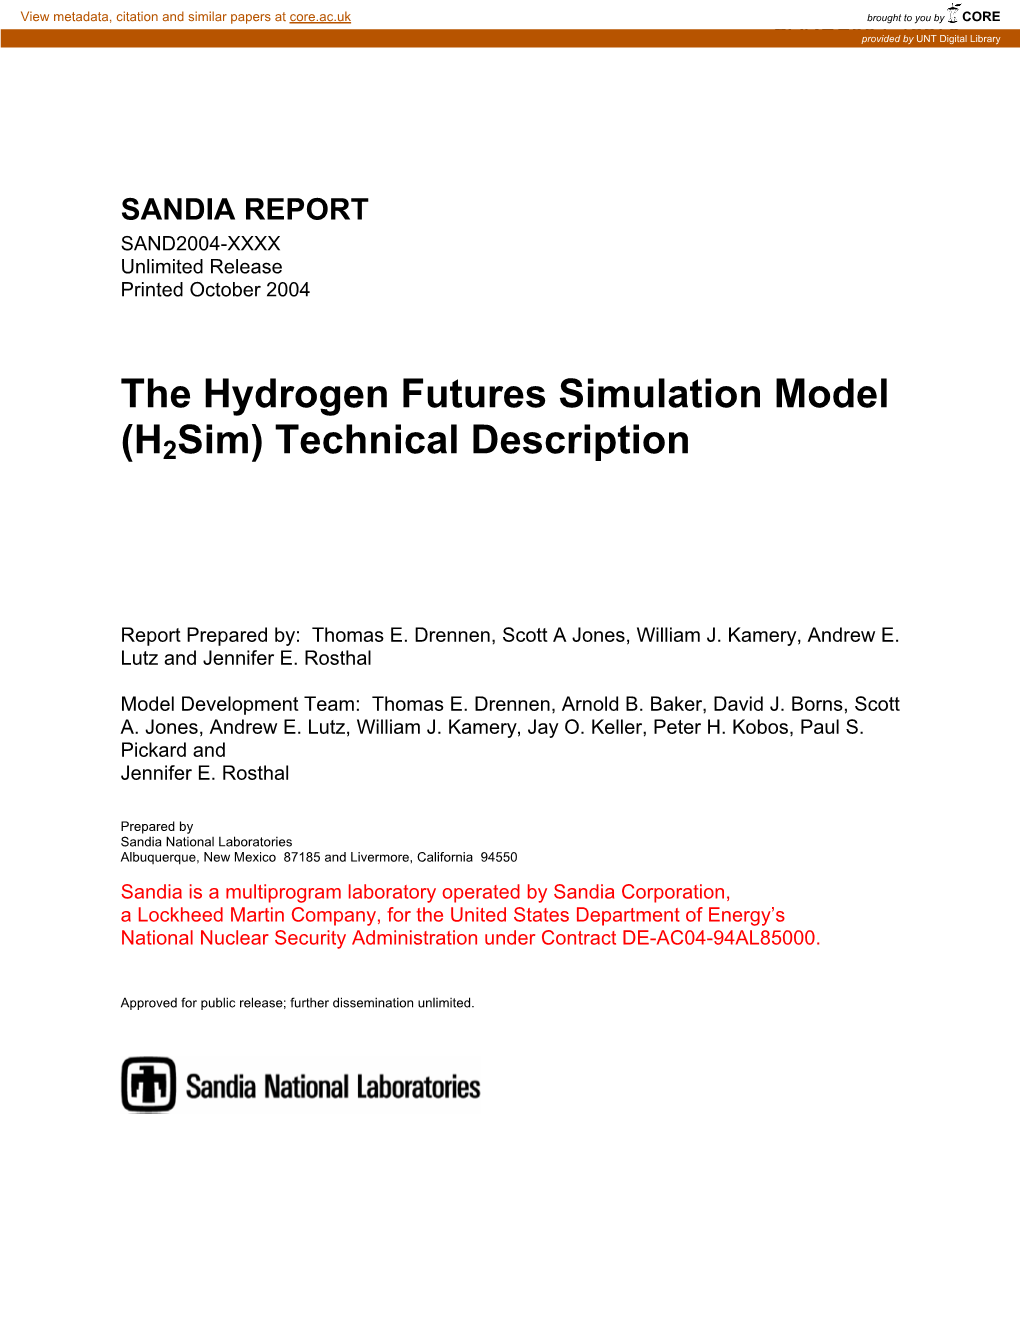 The Hydrogen Futures Simulation Model (H2sim) Technical Description